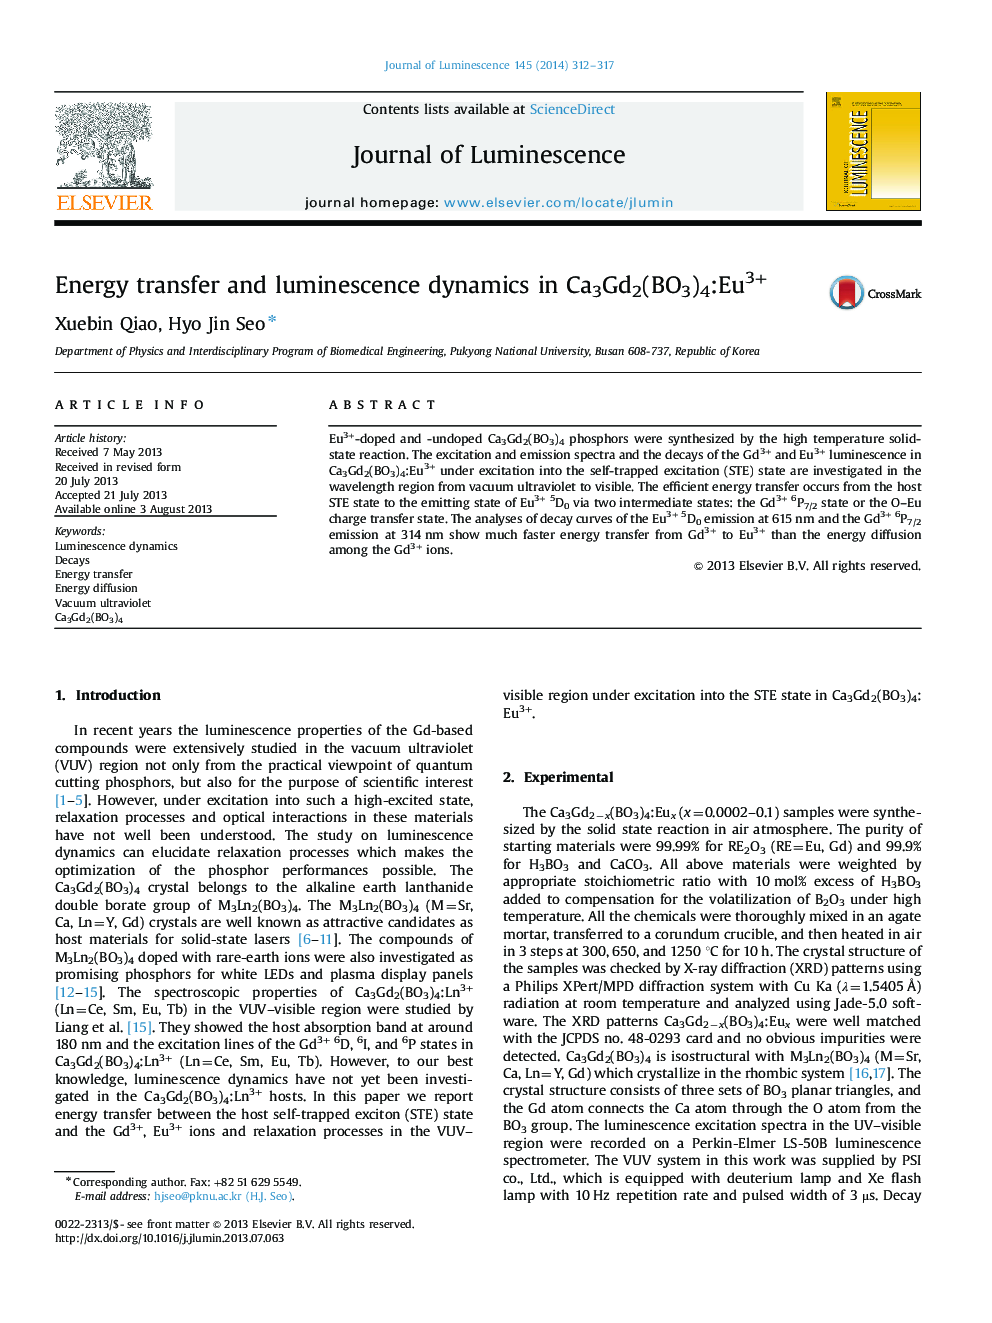 Energy transfer and luminescence dynamics in Ca3Gd2(BO3)4:Eu3+